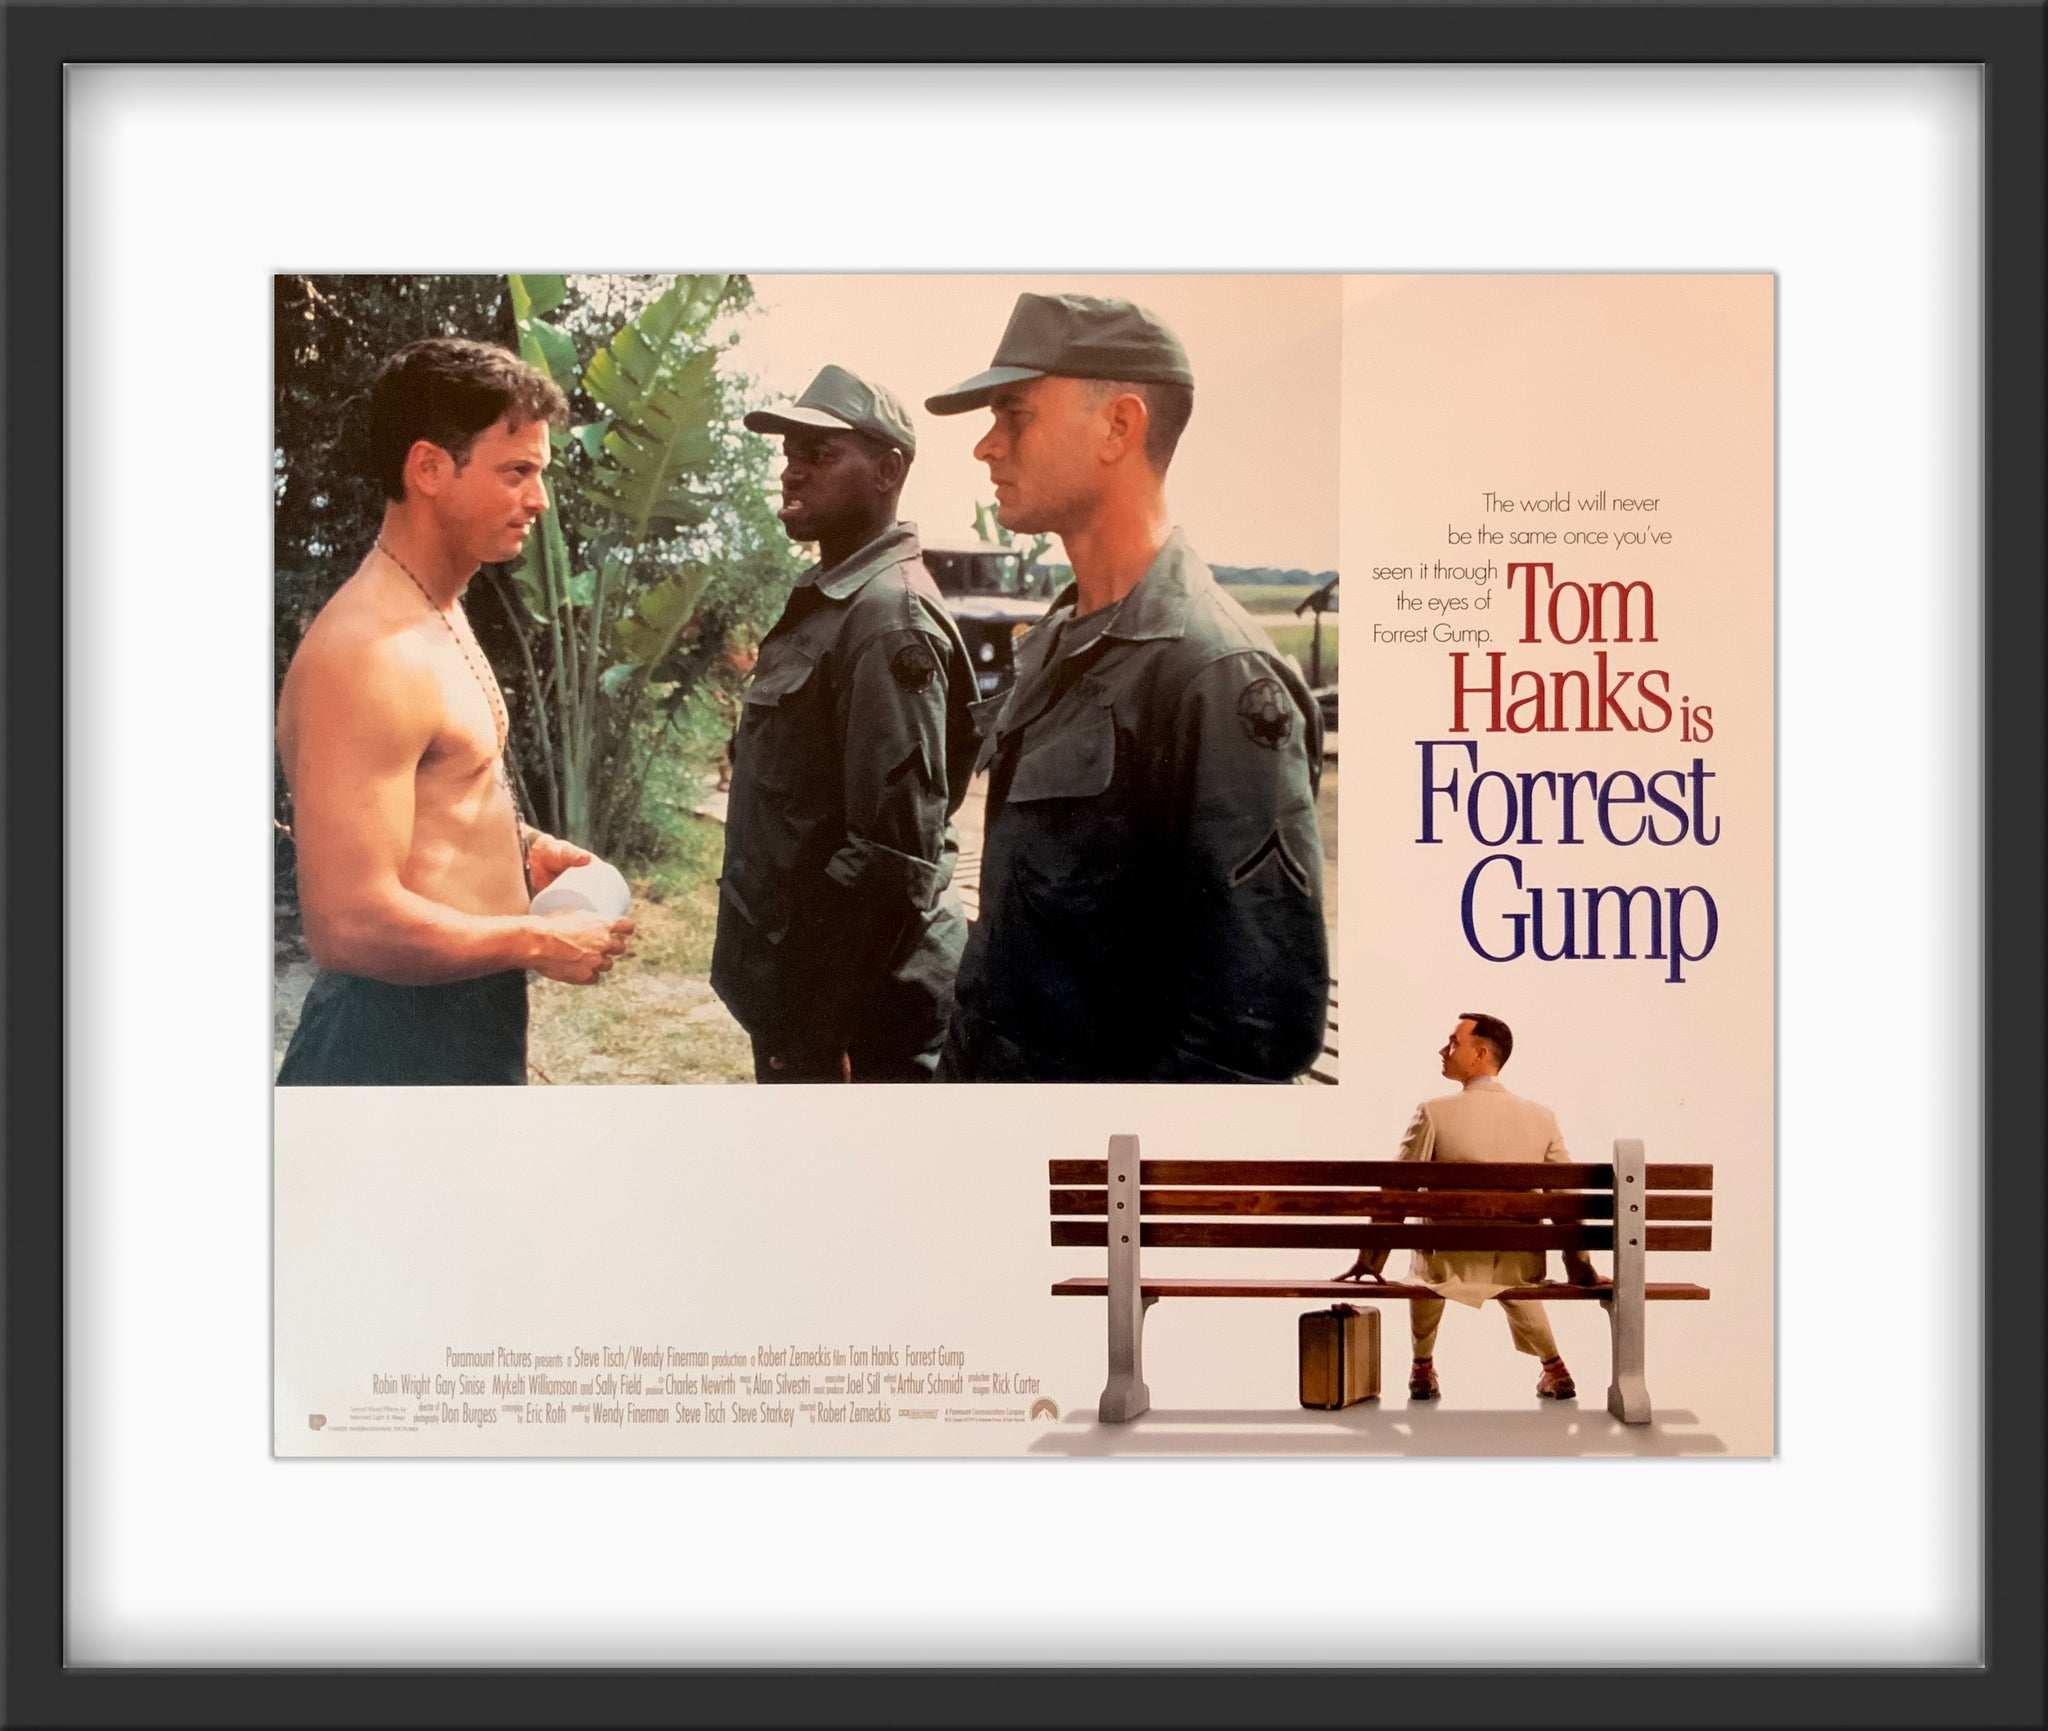 Forrest Gump - Film (1994)